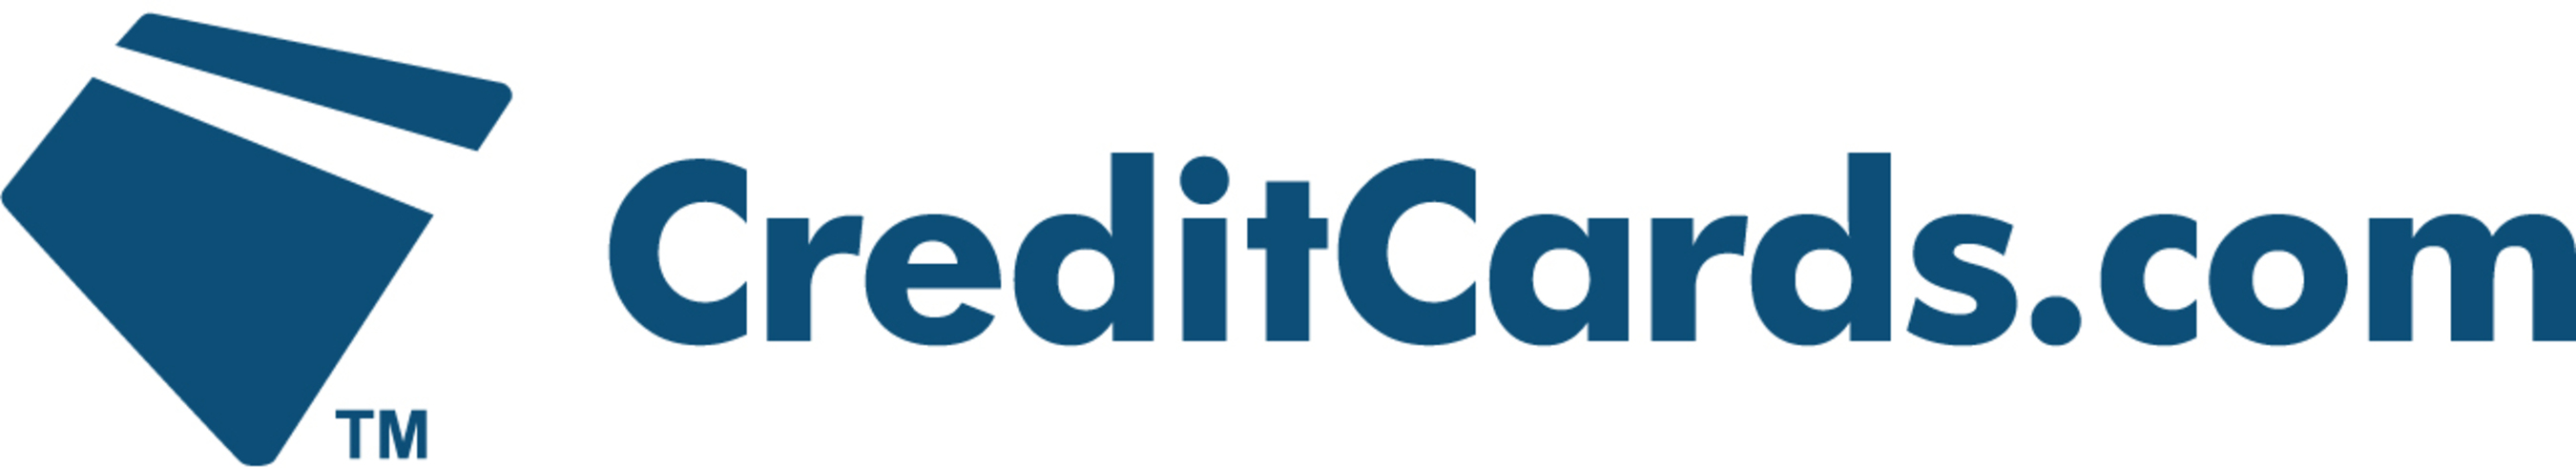 CREDITCARDS.COM logo.